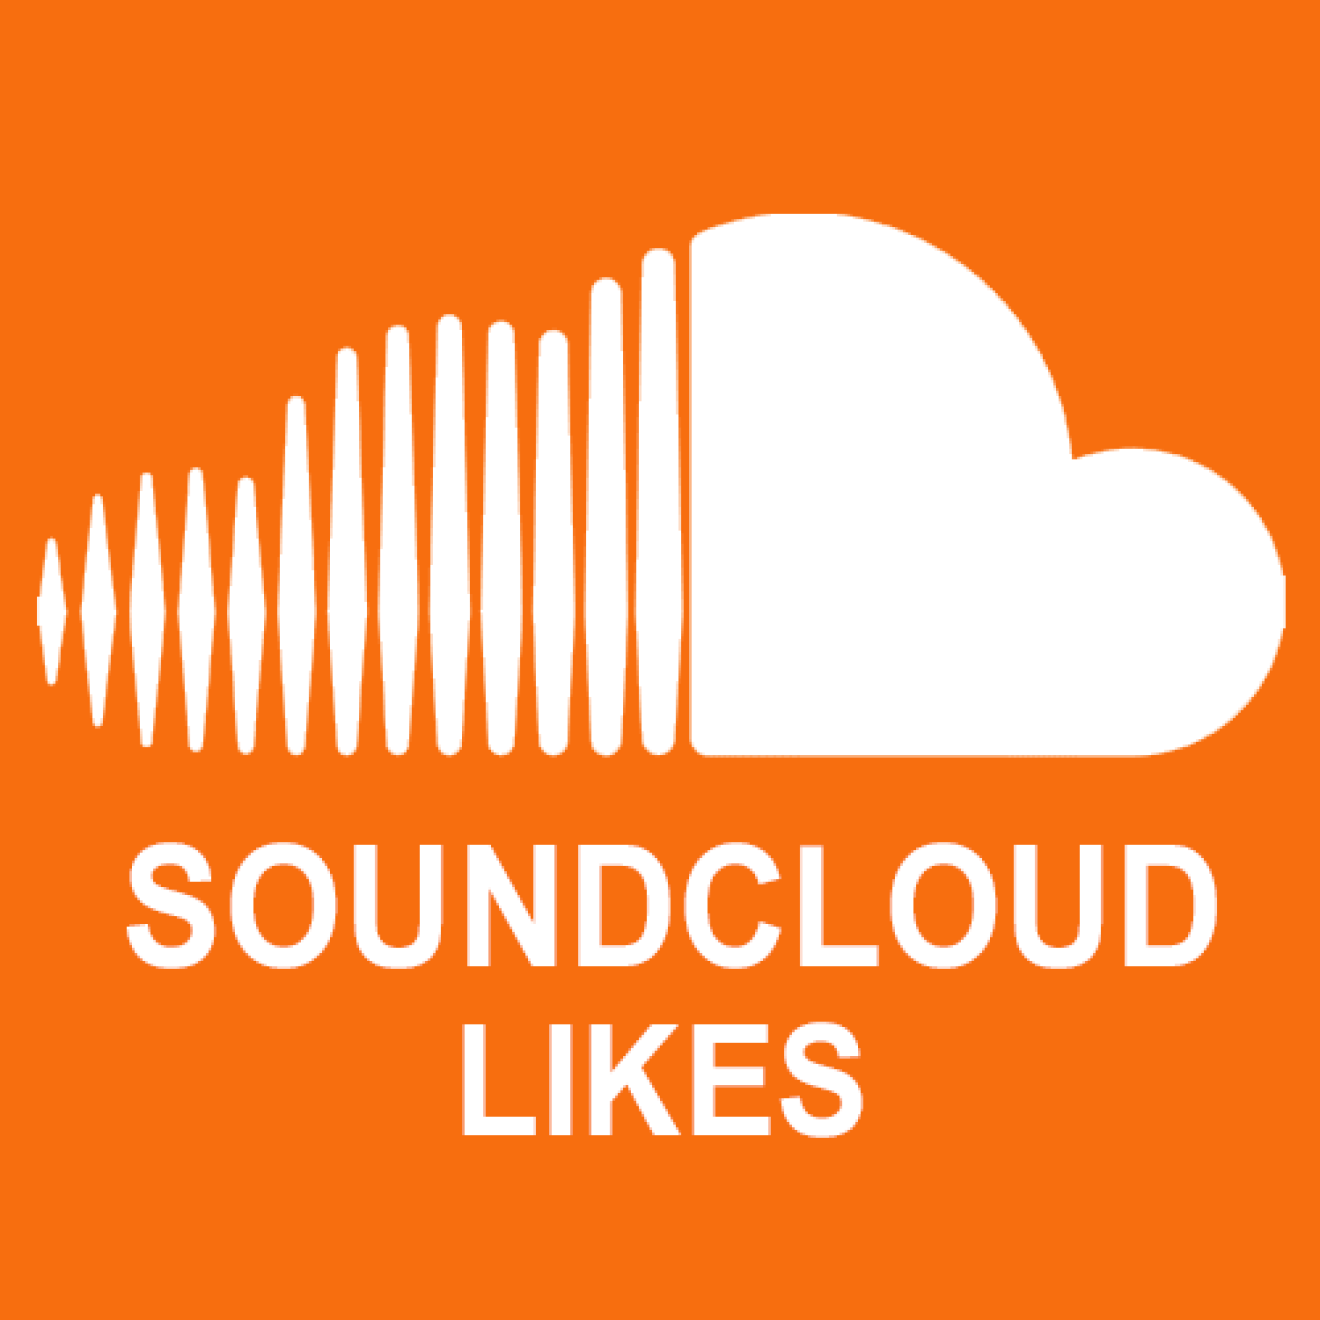 100 Soundcloud Likes / Gefällt mir Angaben für Dich